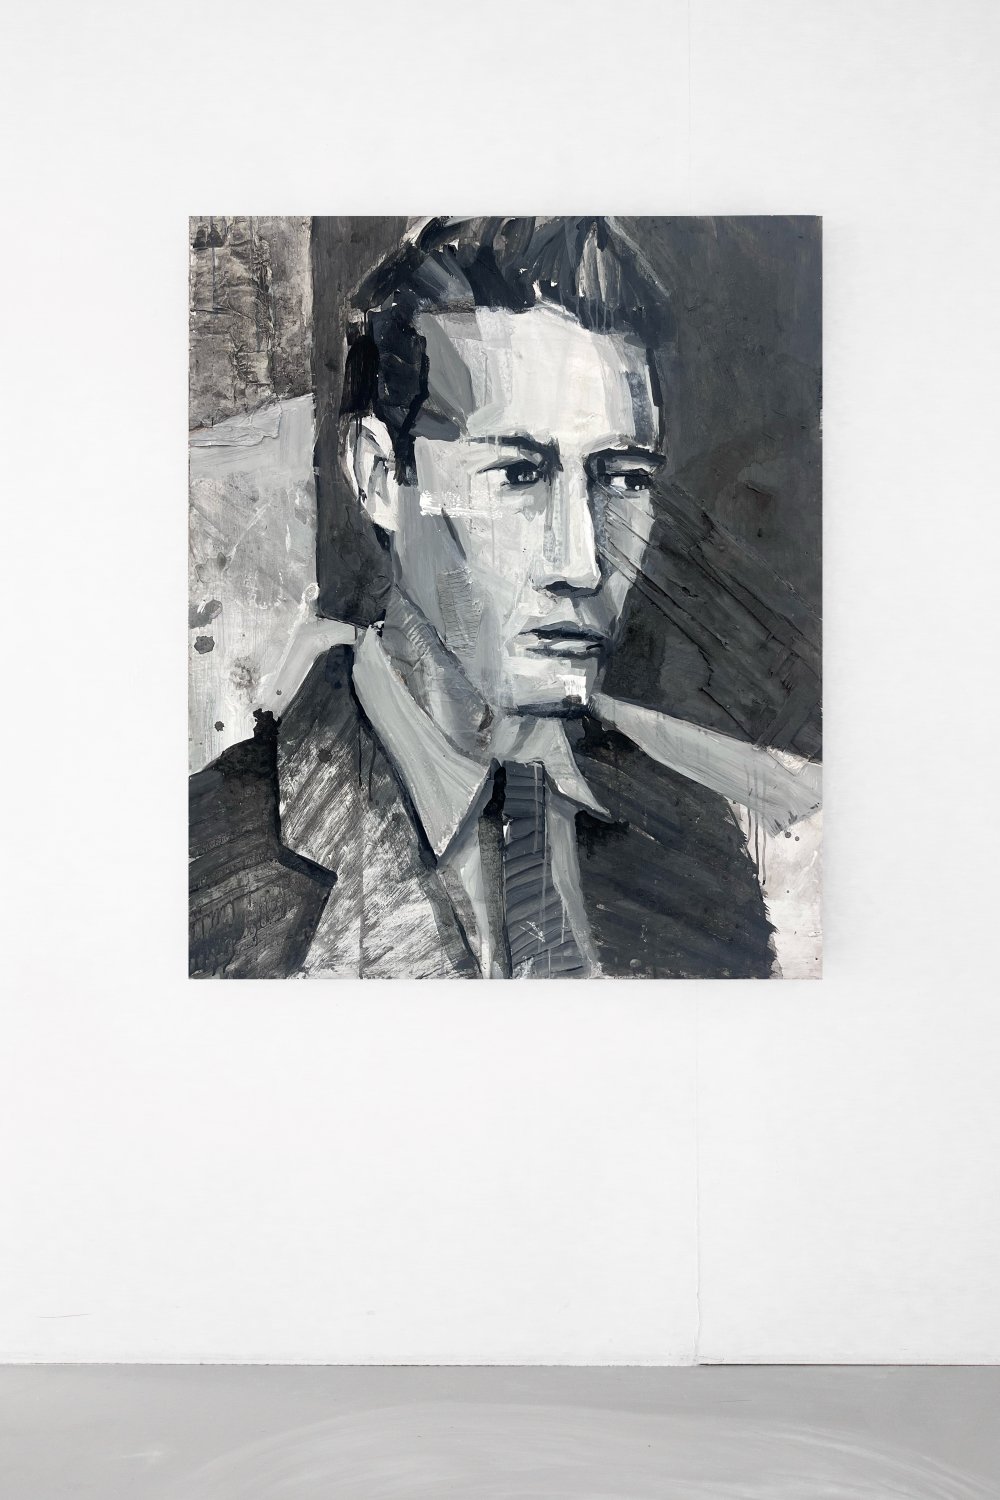 Aldo van den Broek, Alleyway, Acrylics on wood, cardboard, 120 x 100 cm, 2023